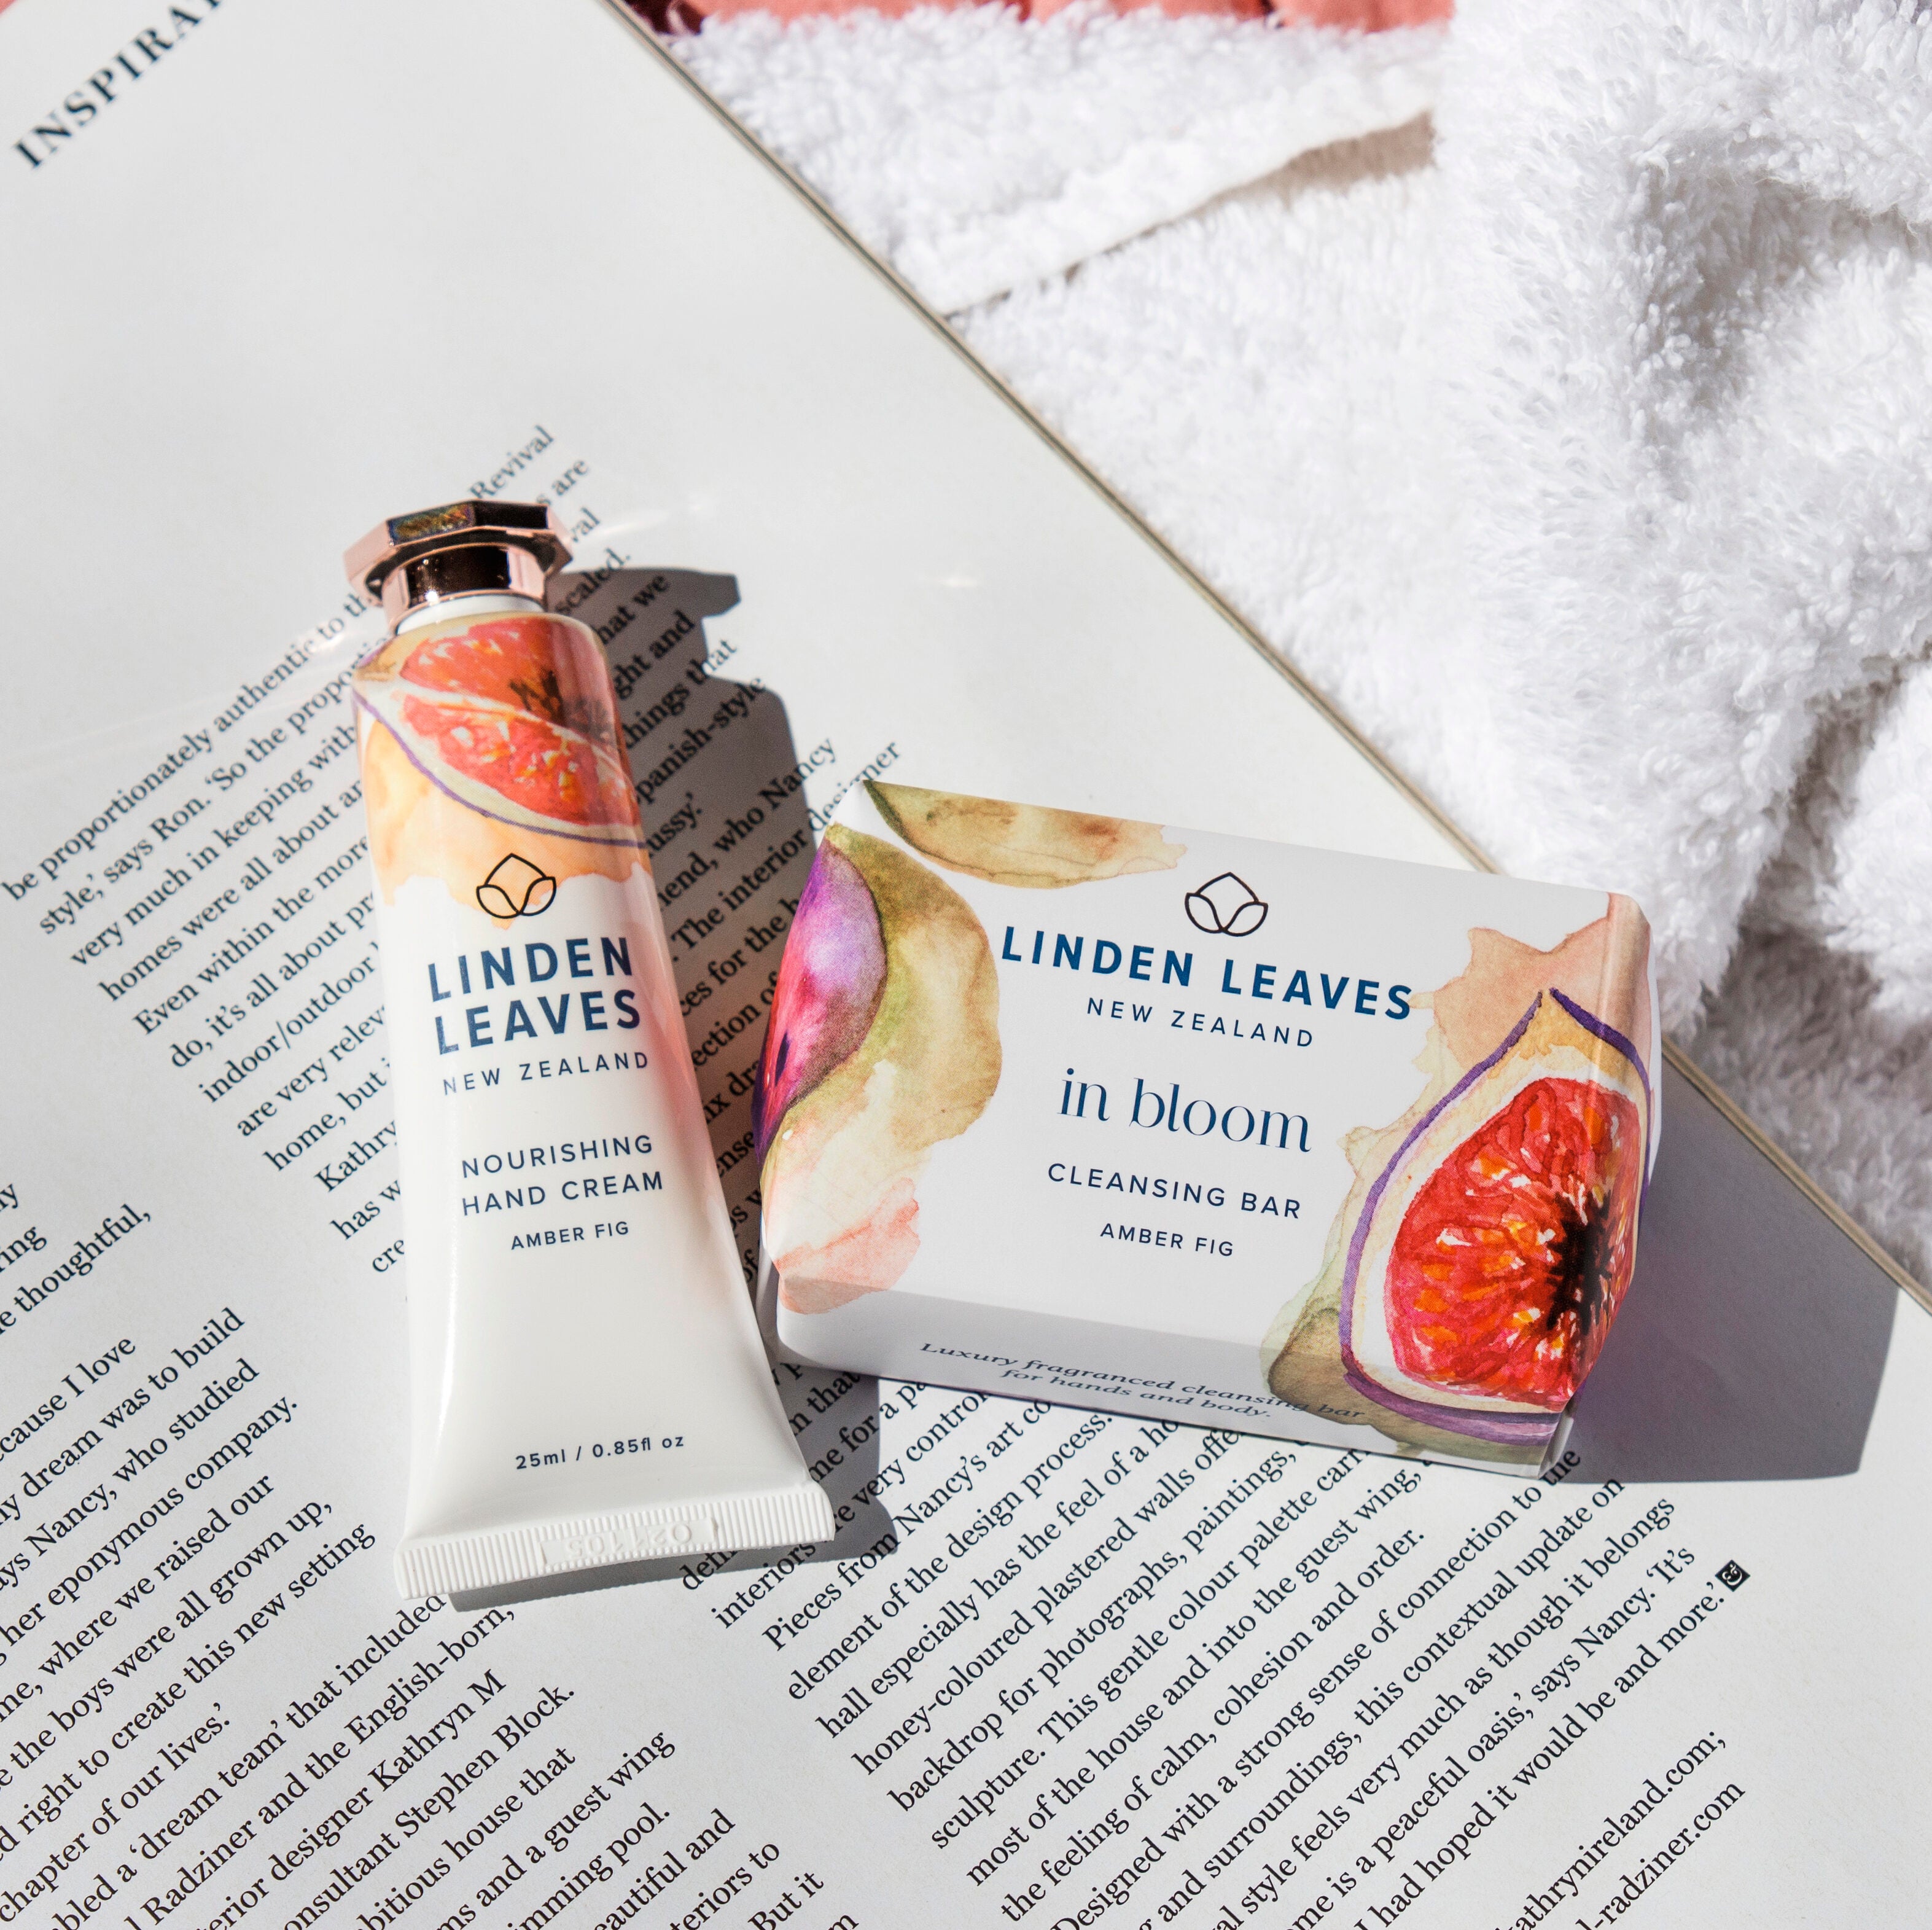 Linden Leaves Amber Fig Hand Cream & Cleansing Bar Set.